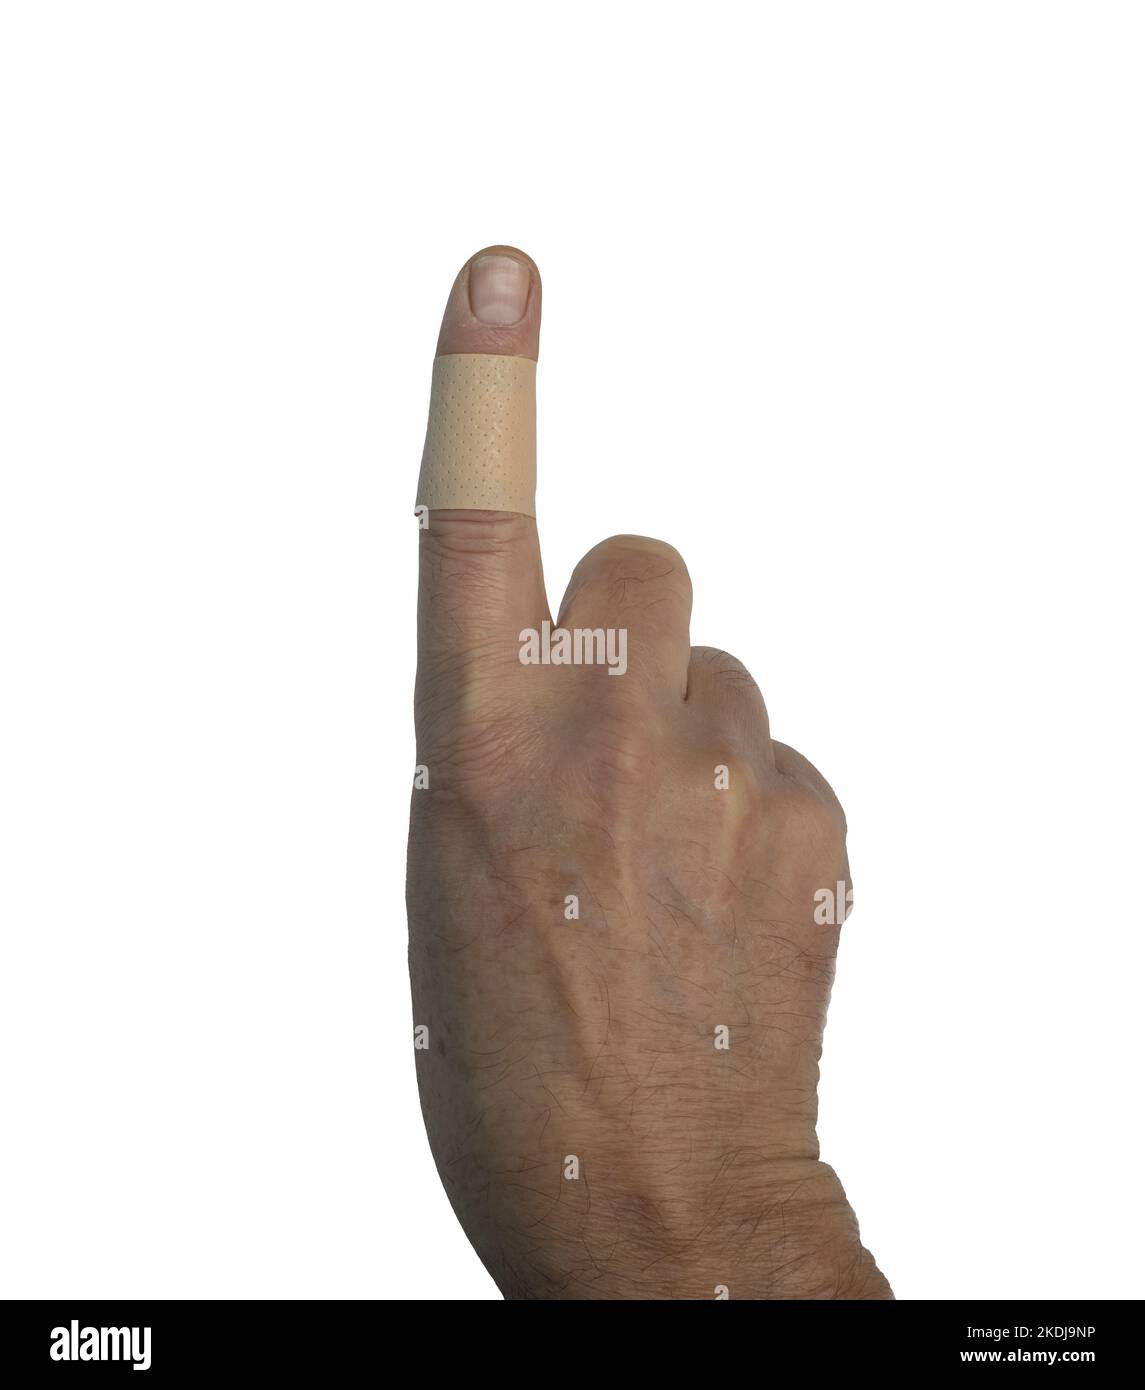 Eine männliche Hand mit einem Pfand am Finger auf einem transparenten Hintergrund Stockfoto